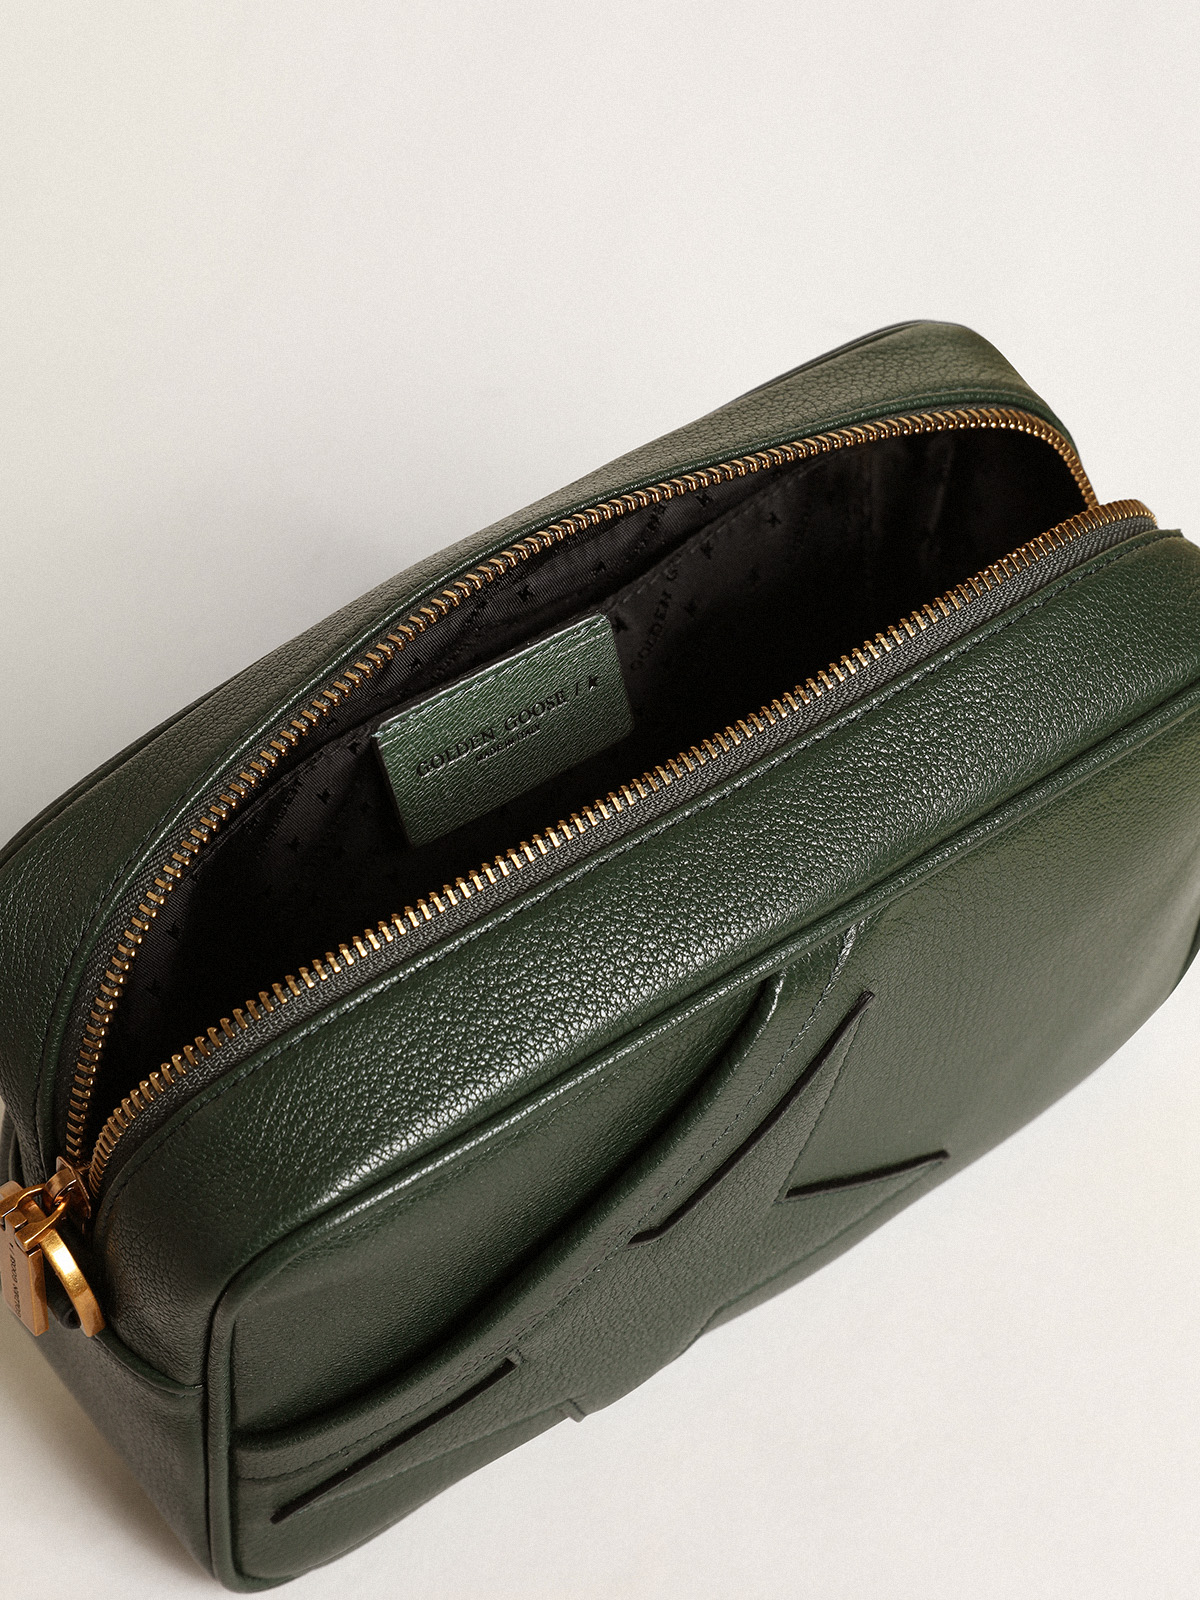 1pc Green Star Shaped Tassel Tote Bag, Handbag Or Shoulder Bag For